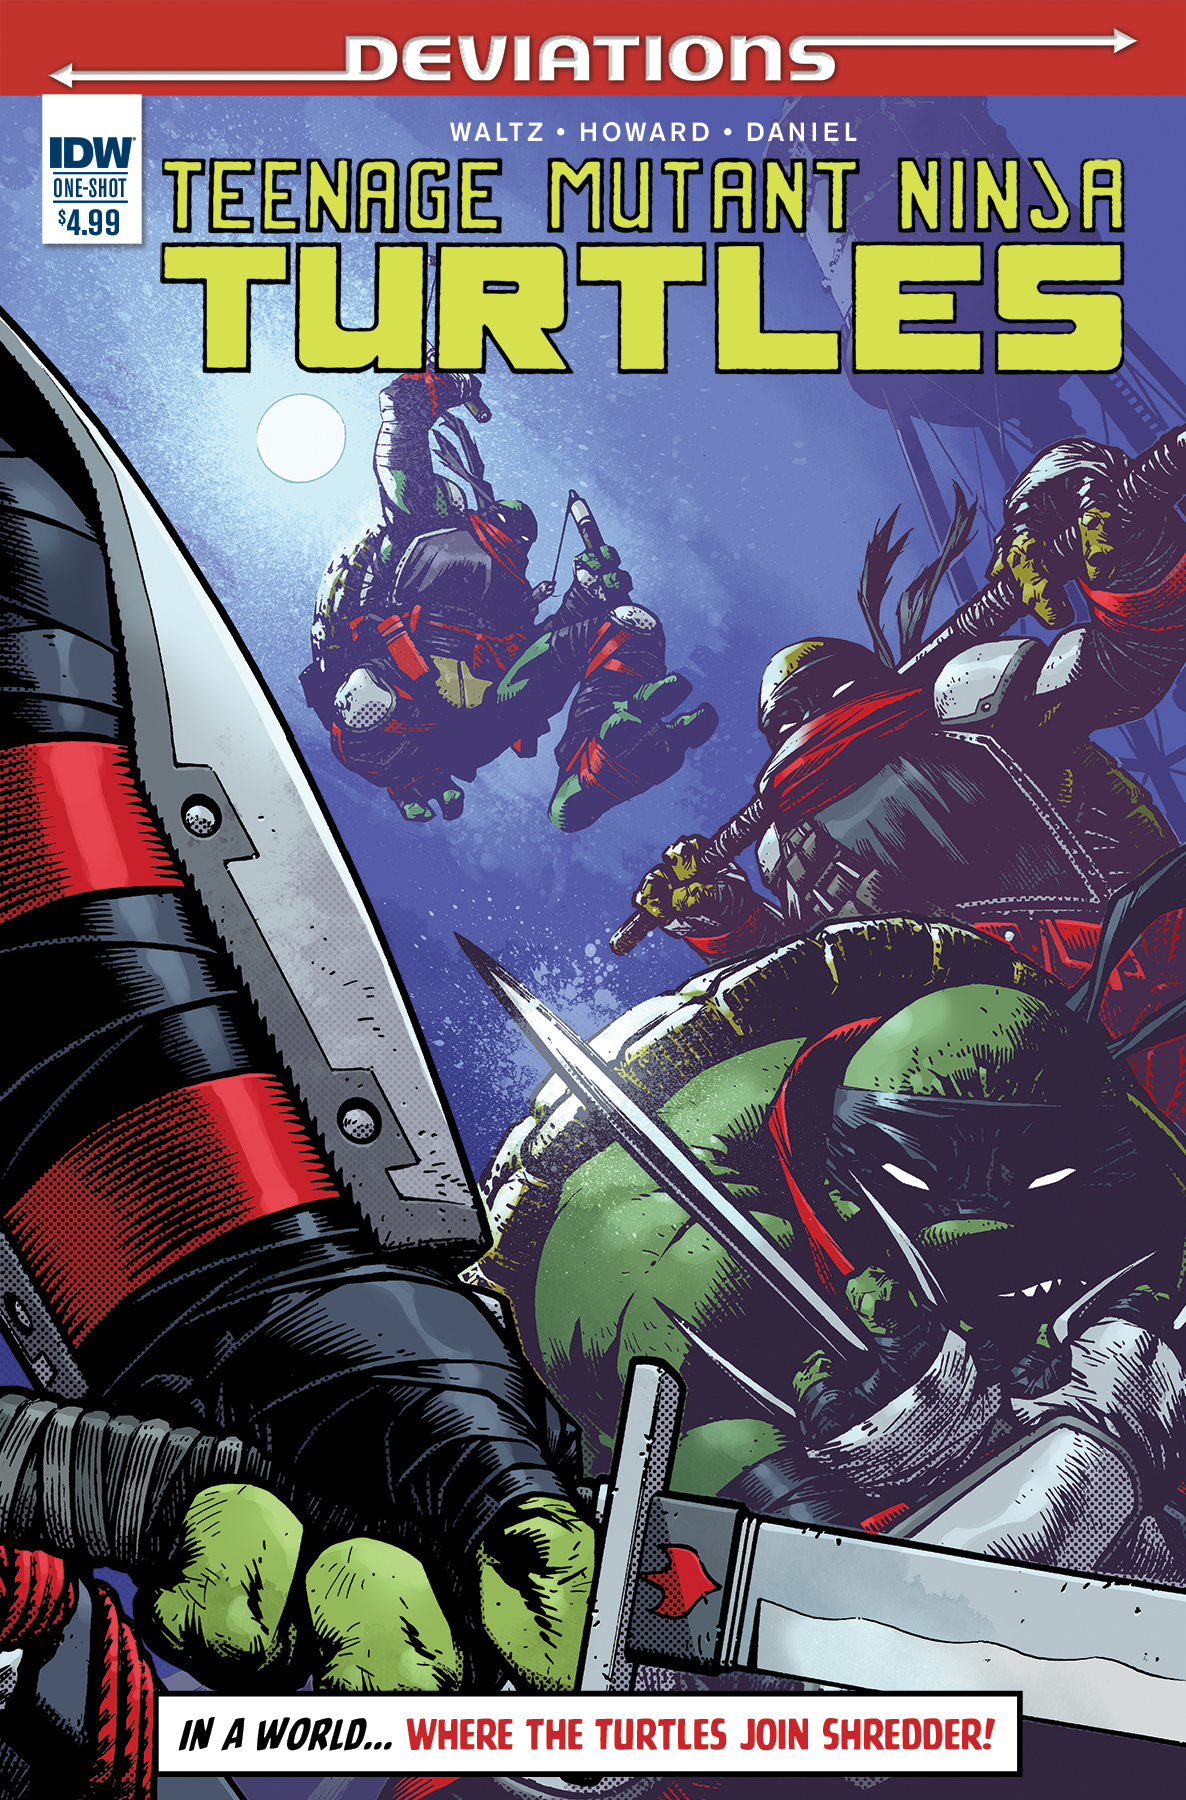 Teenage Mutant Ninja Turtles Deviations Cover